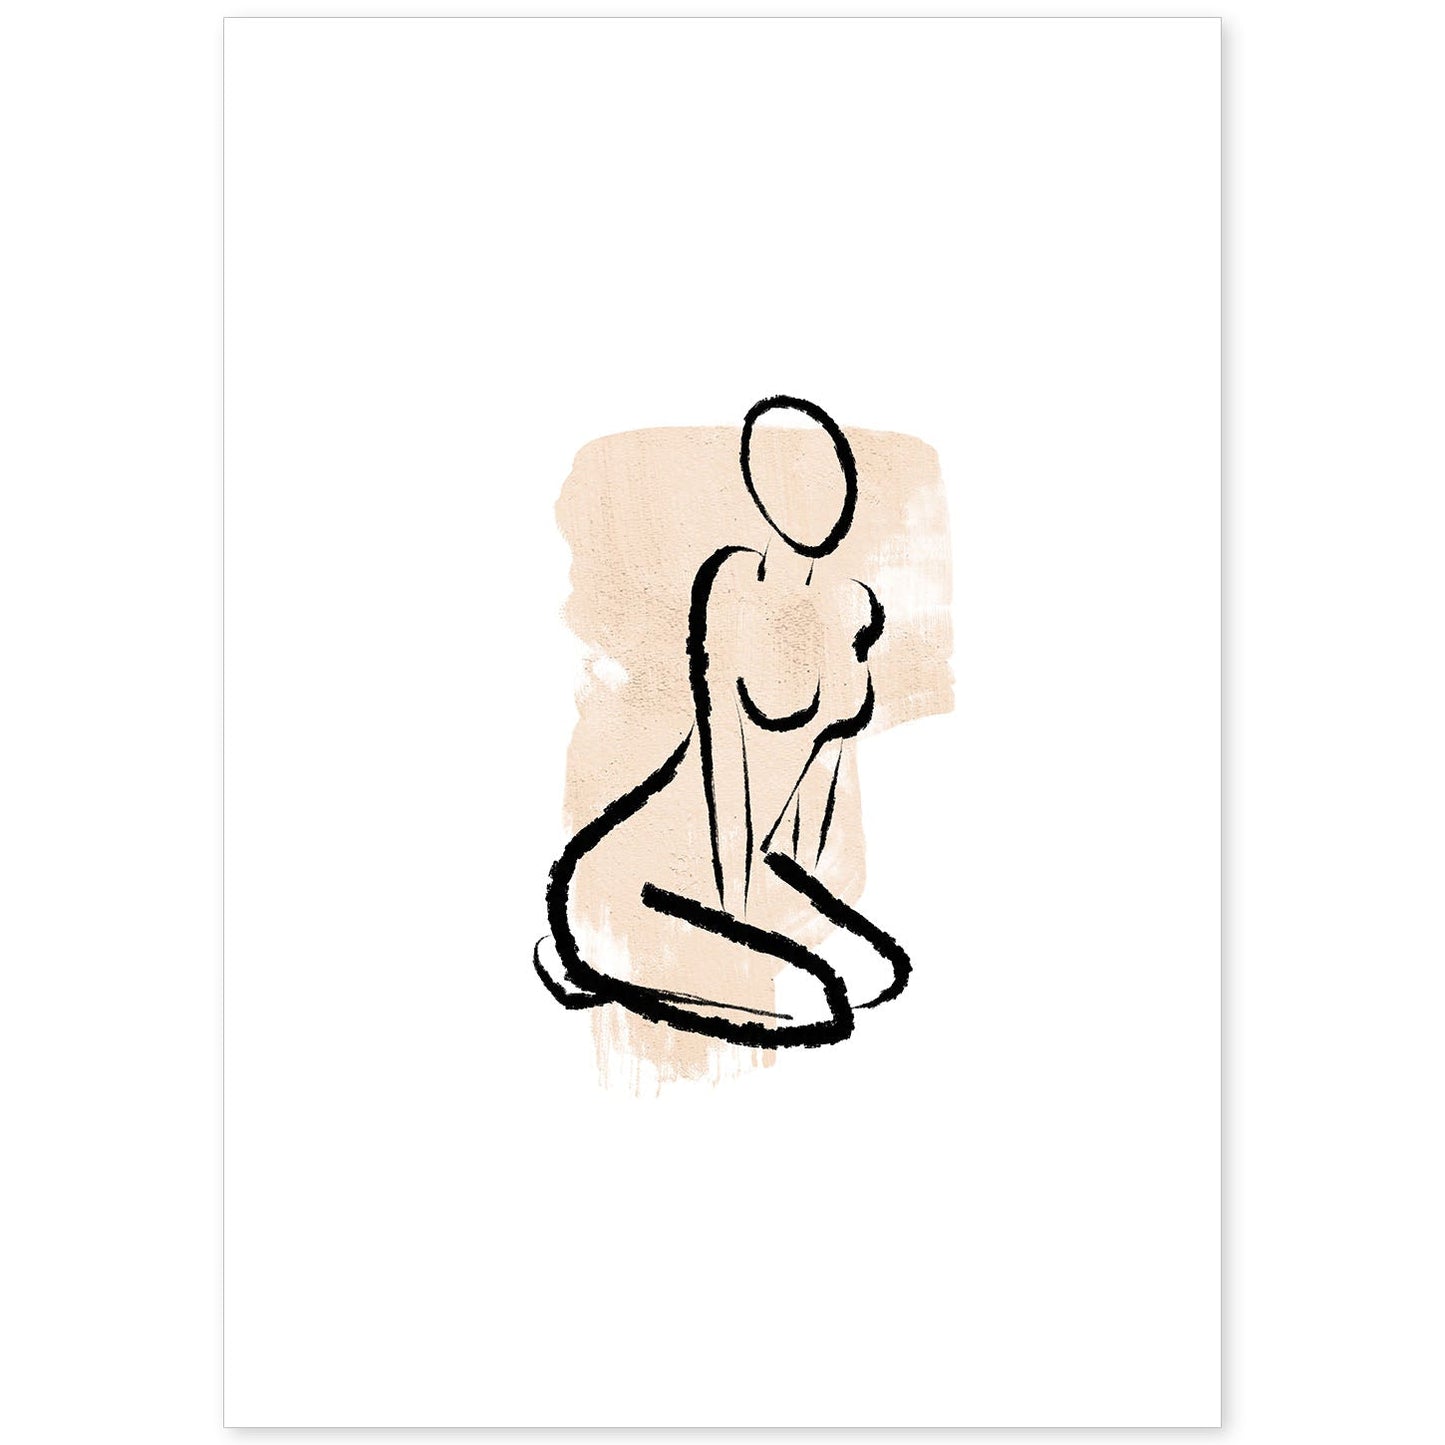 Poster con ilustracion de mujer. Dibujos con formas, caras, cuerpos y gestos de mujeres. 'Mujeres 16'.-Artwork-Nacnic-A4-Sin marco-Nacnic Estudio SL